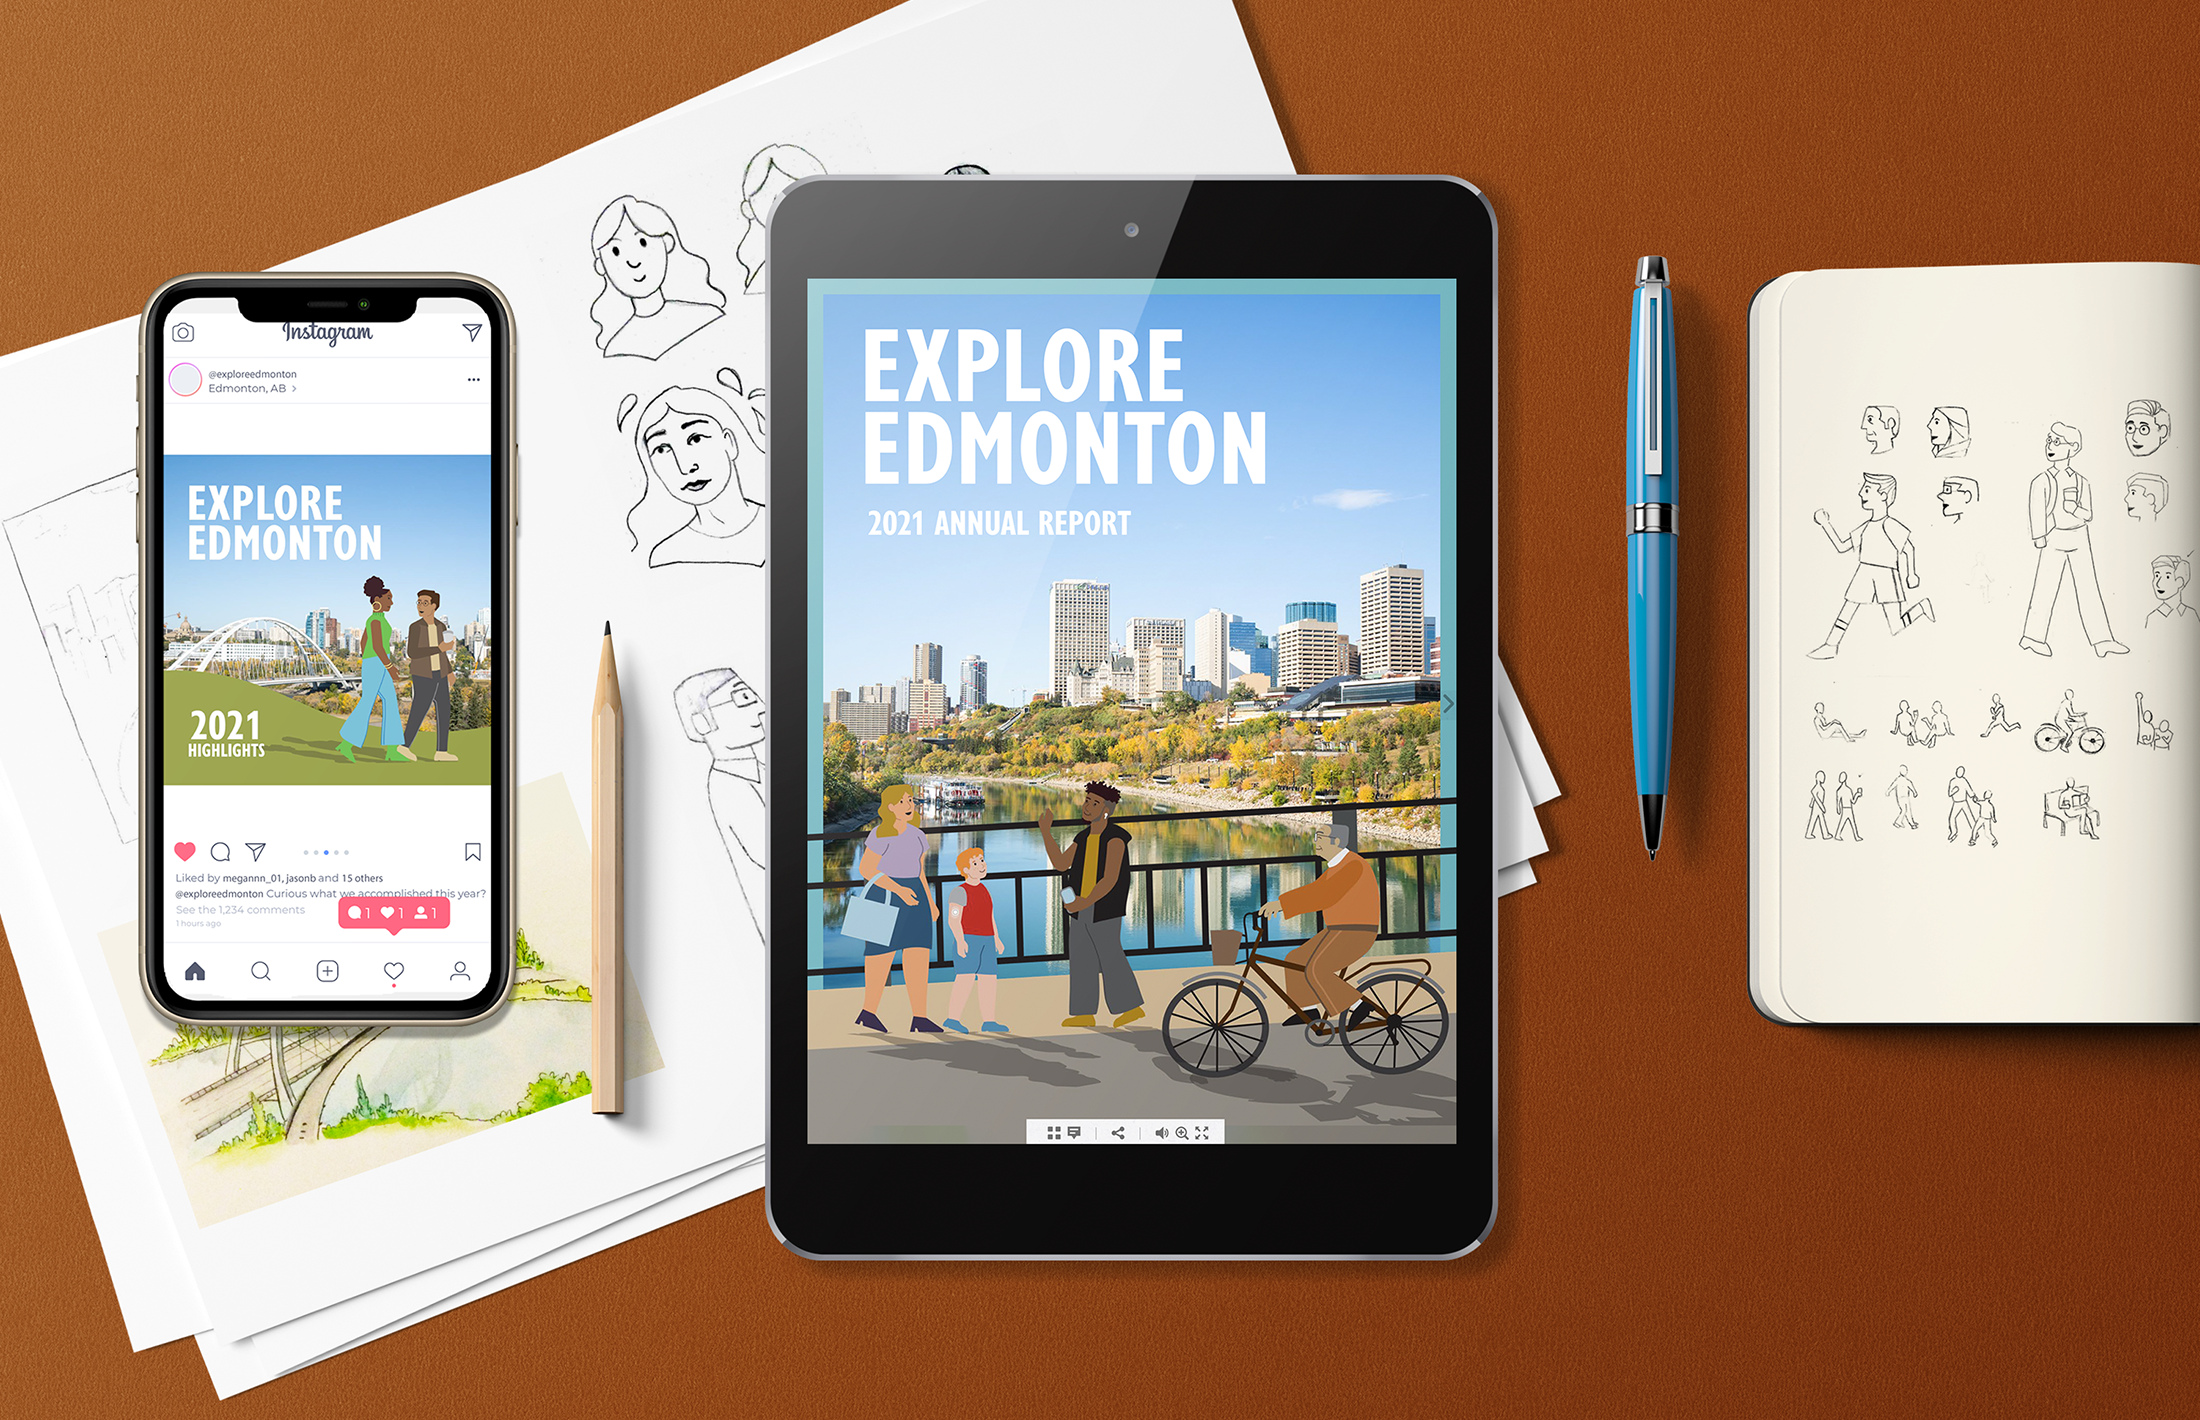 Annual Report Design for Explore Edmonton - Image 1